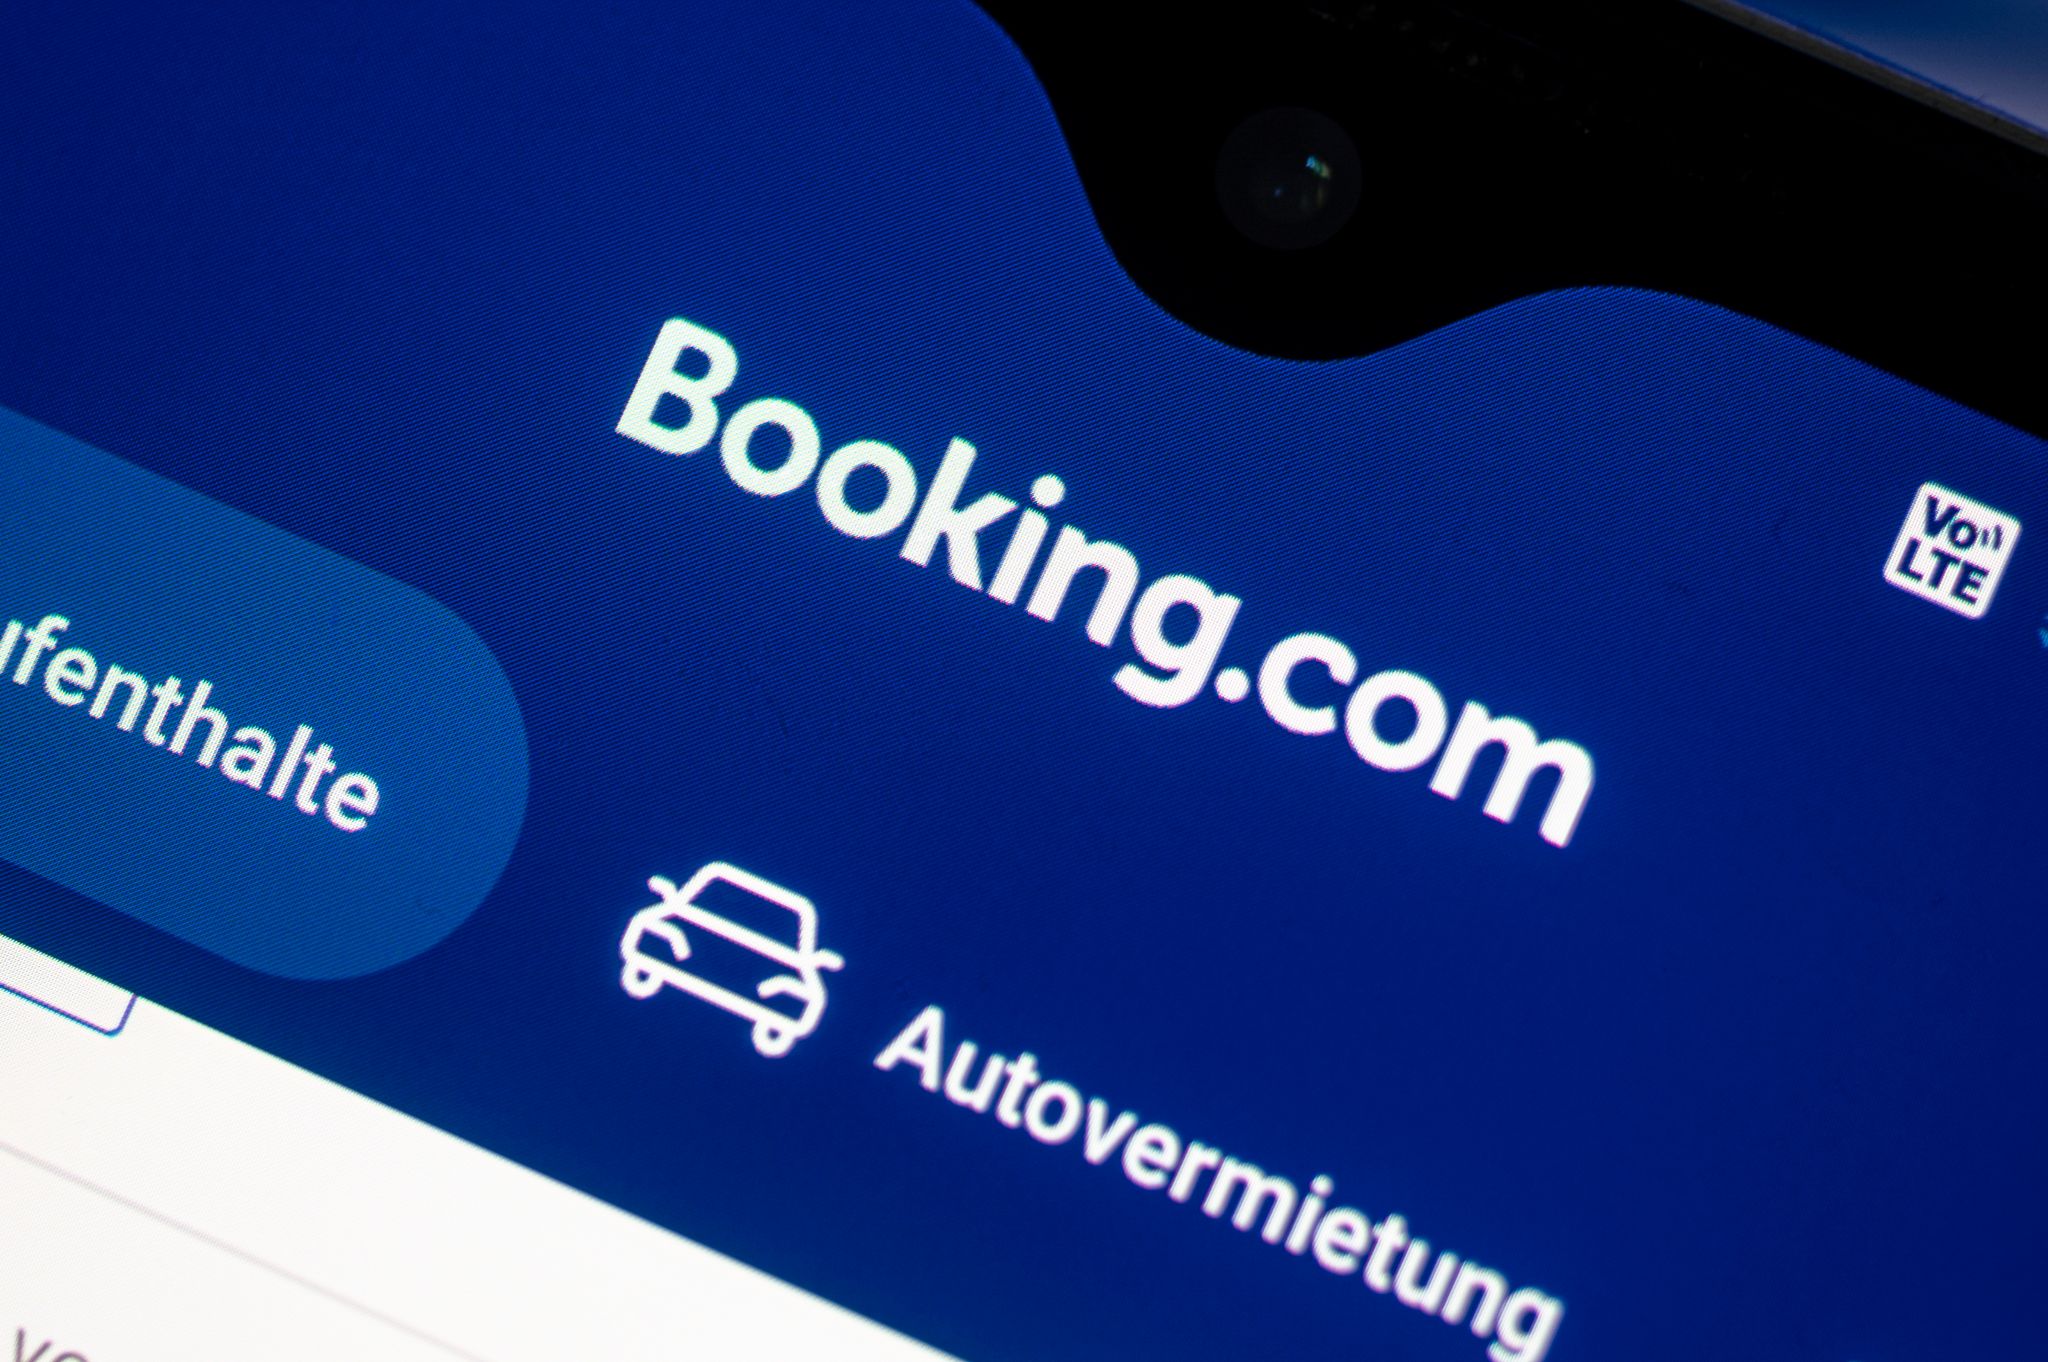 Die App des Reisebuchungsportals Booking.com auf einem Smartphone